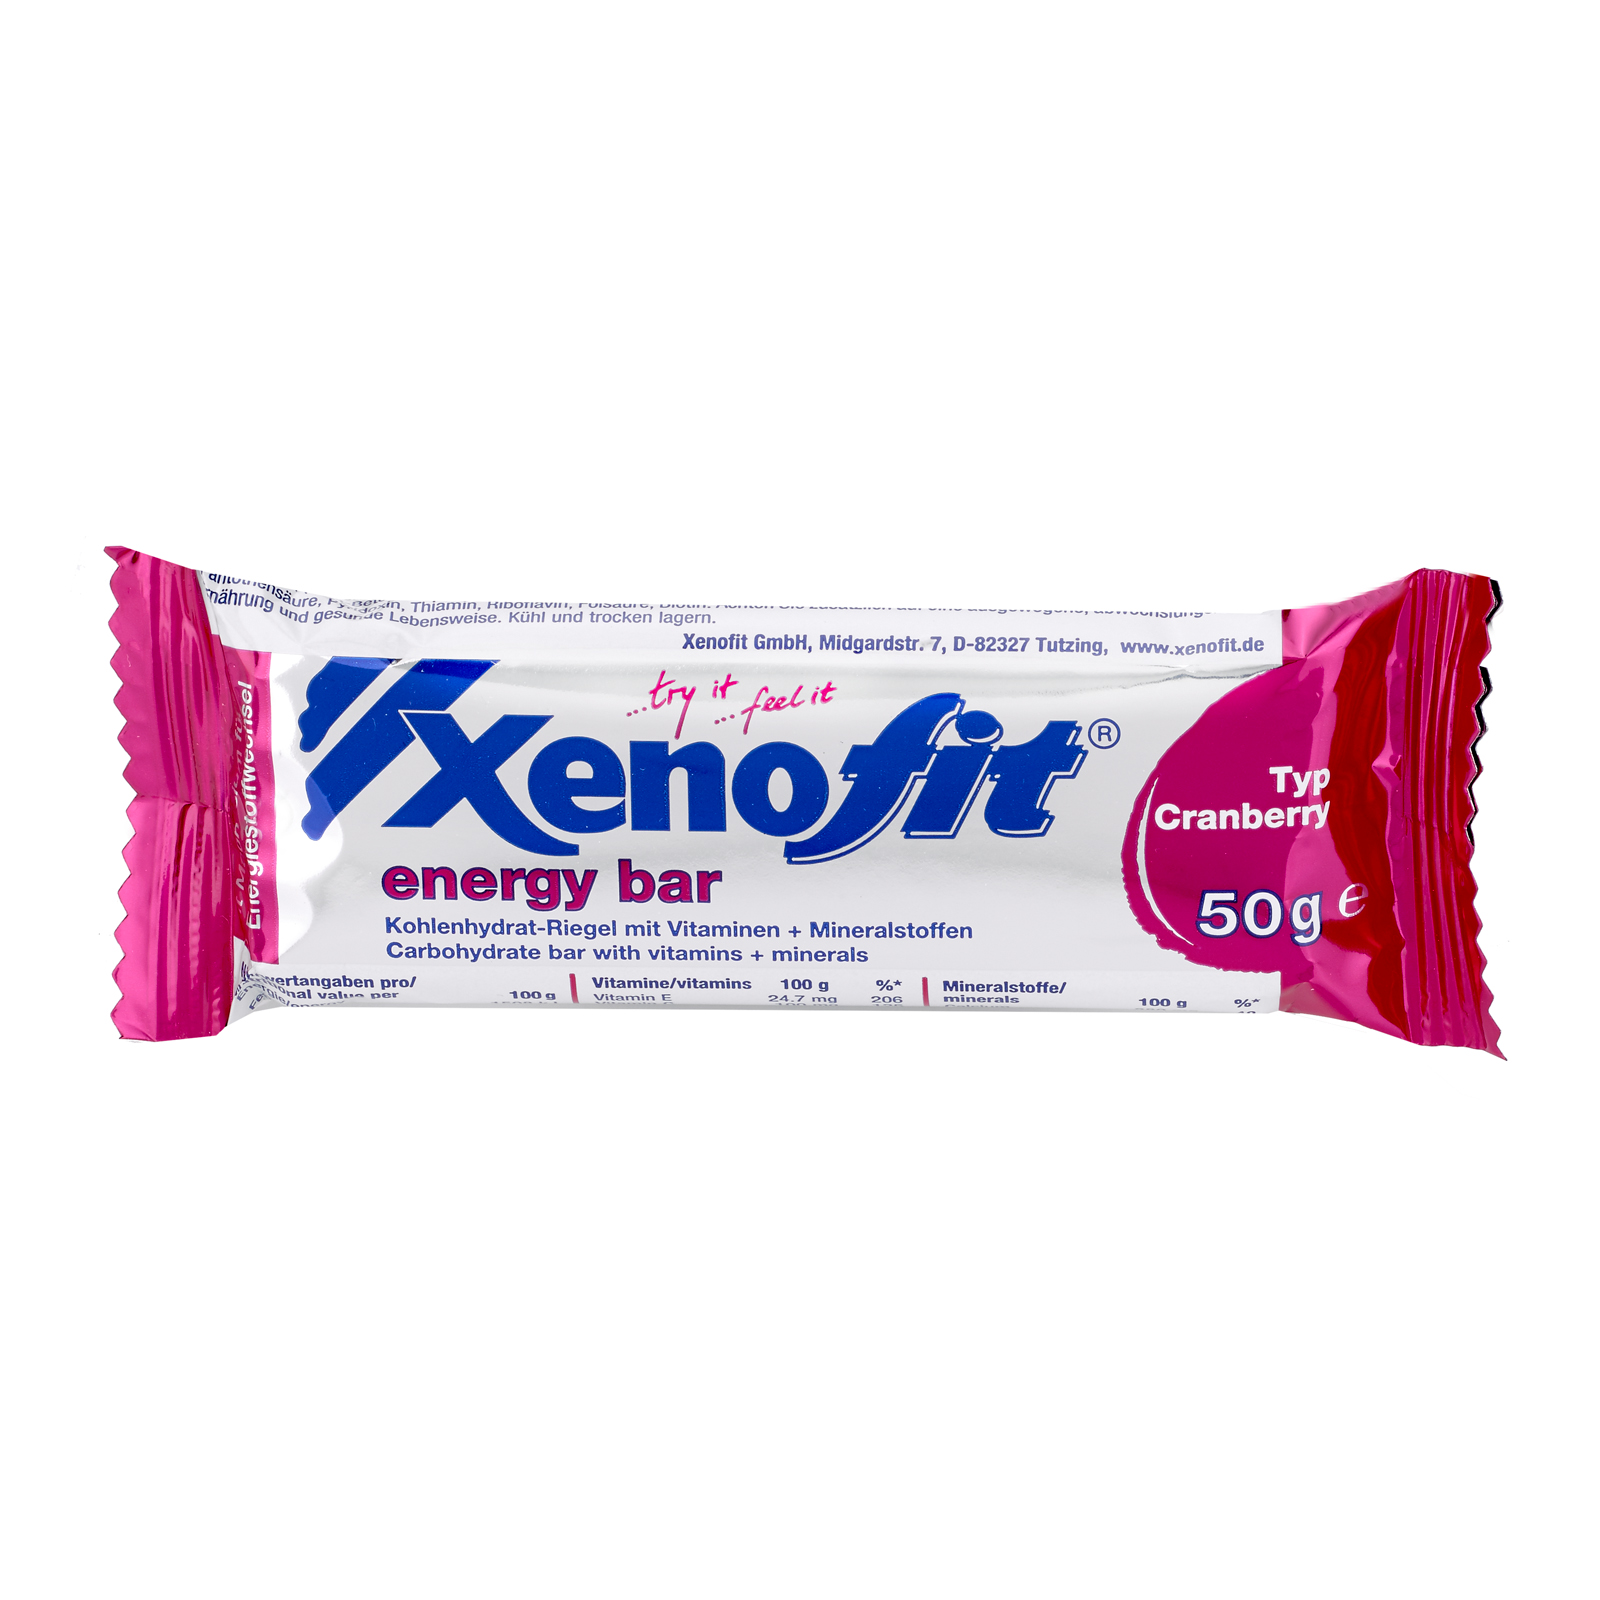 Xenofit_energy_bar_Cra